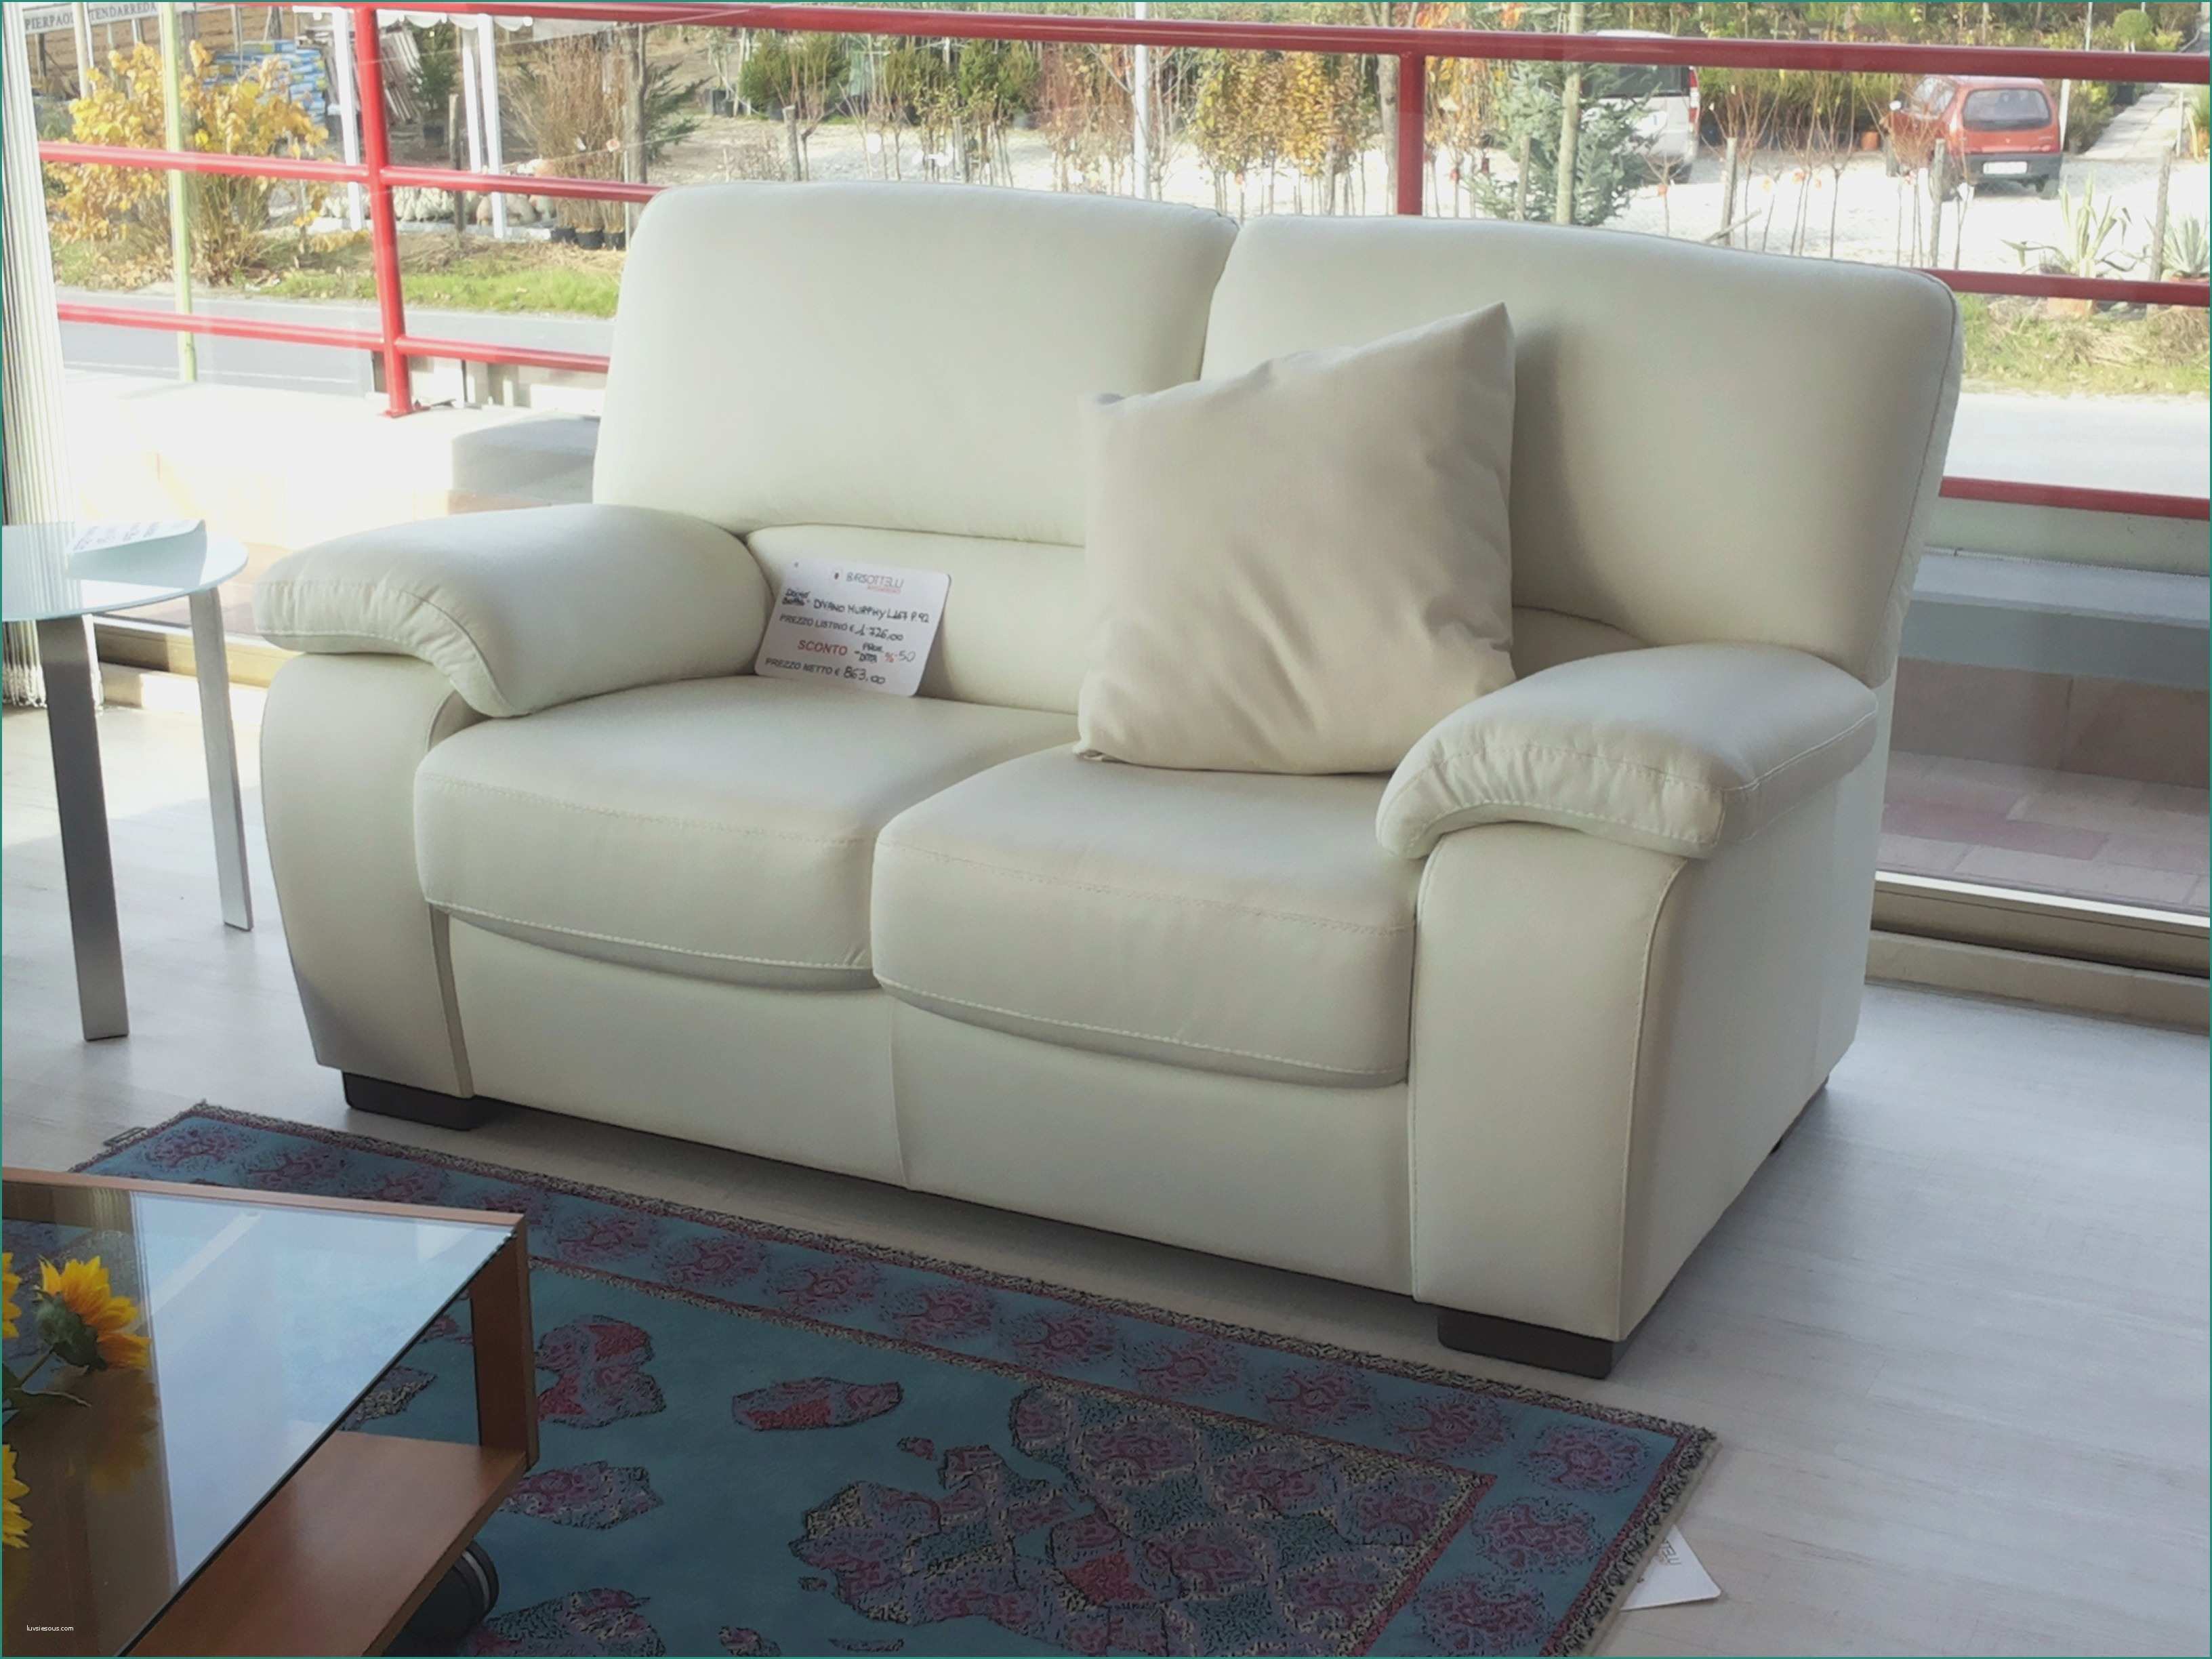 Poltrone E sofa Offerte E ispirazione Divani In Ferta Decorazioni Per La Casa